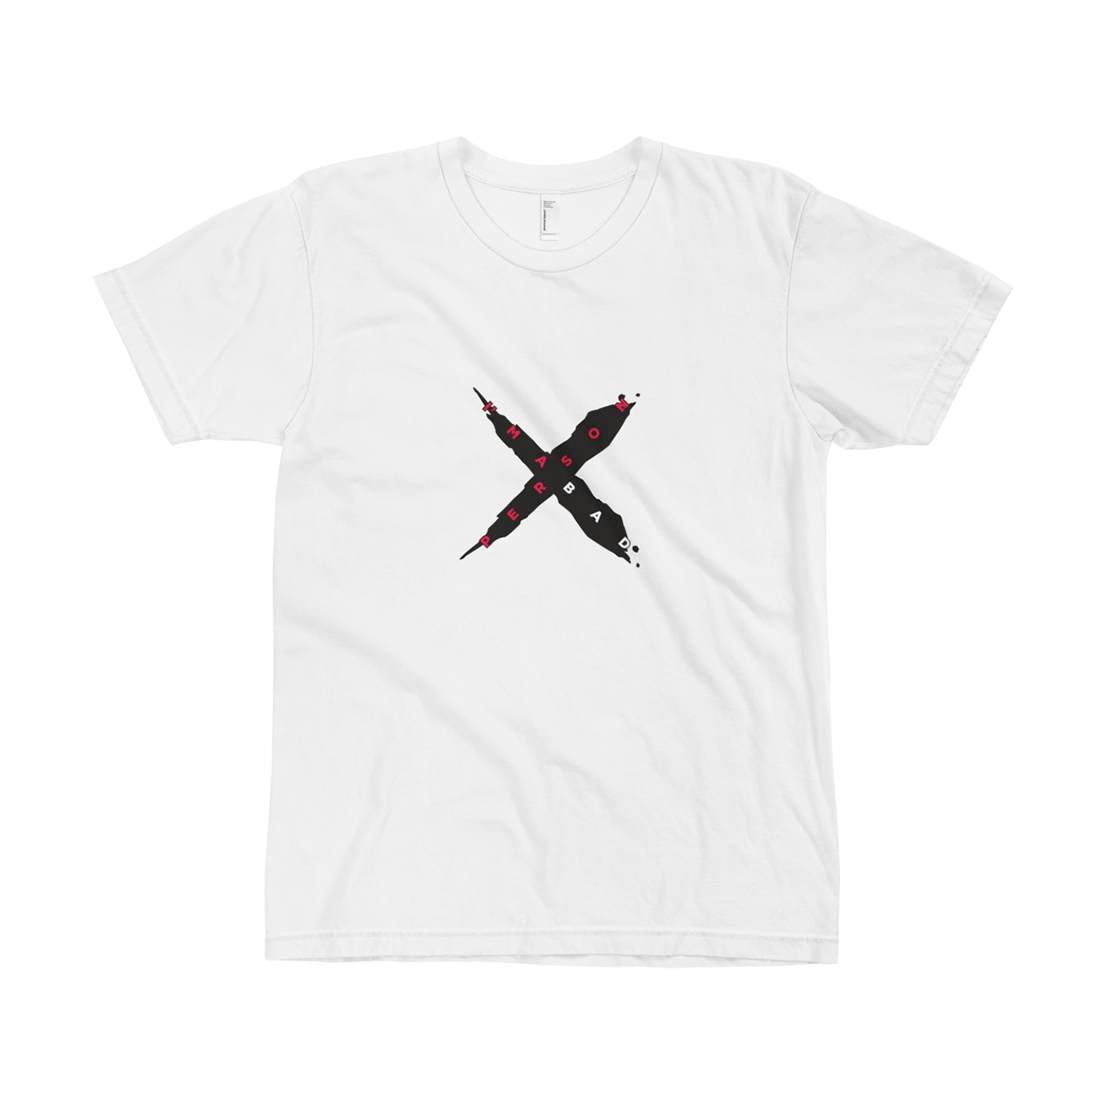 XanMan Bad Person X T-Shirt